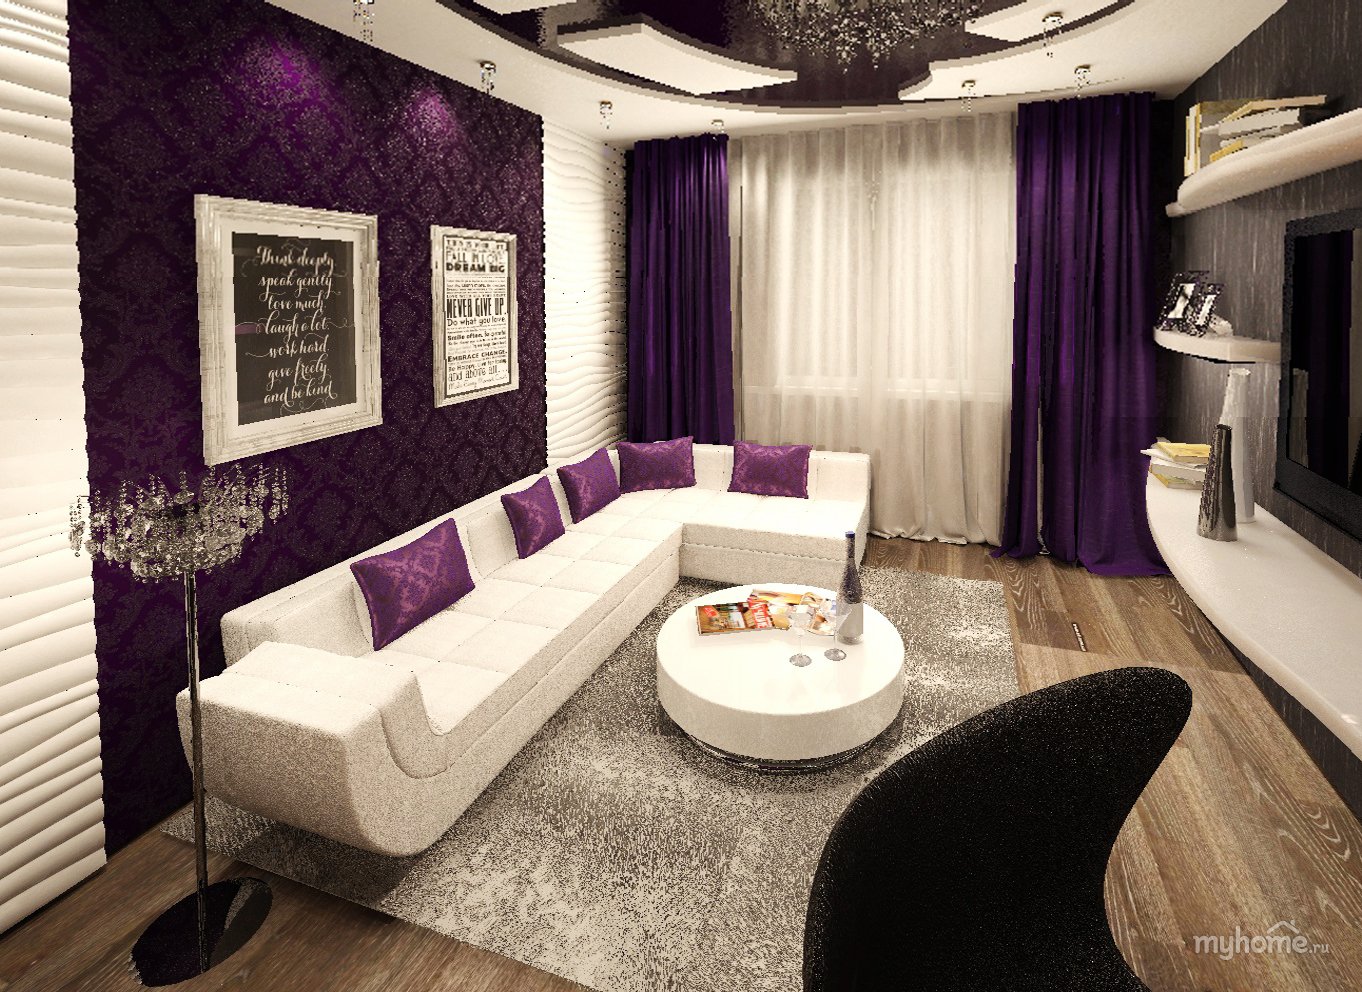 Фиолетовый диван, преимущества, удачные цветовые сочетания мебели